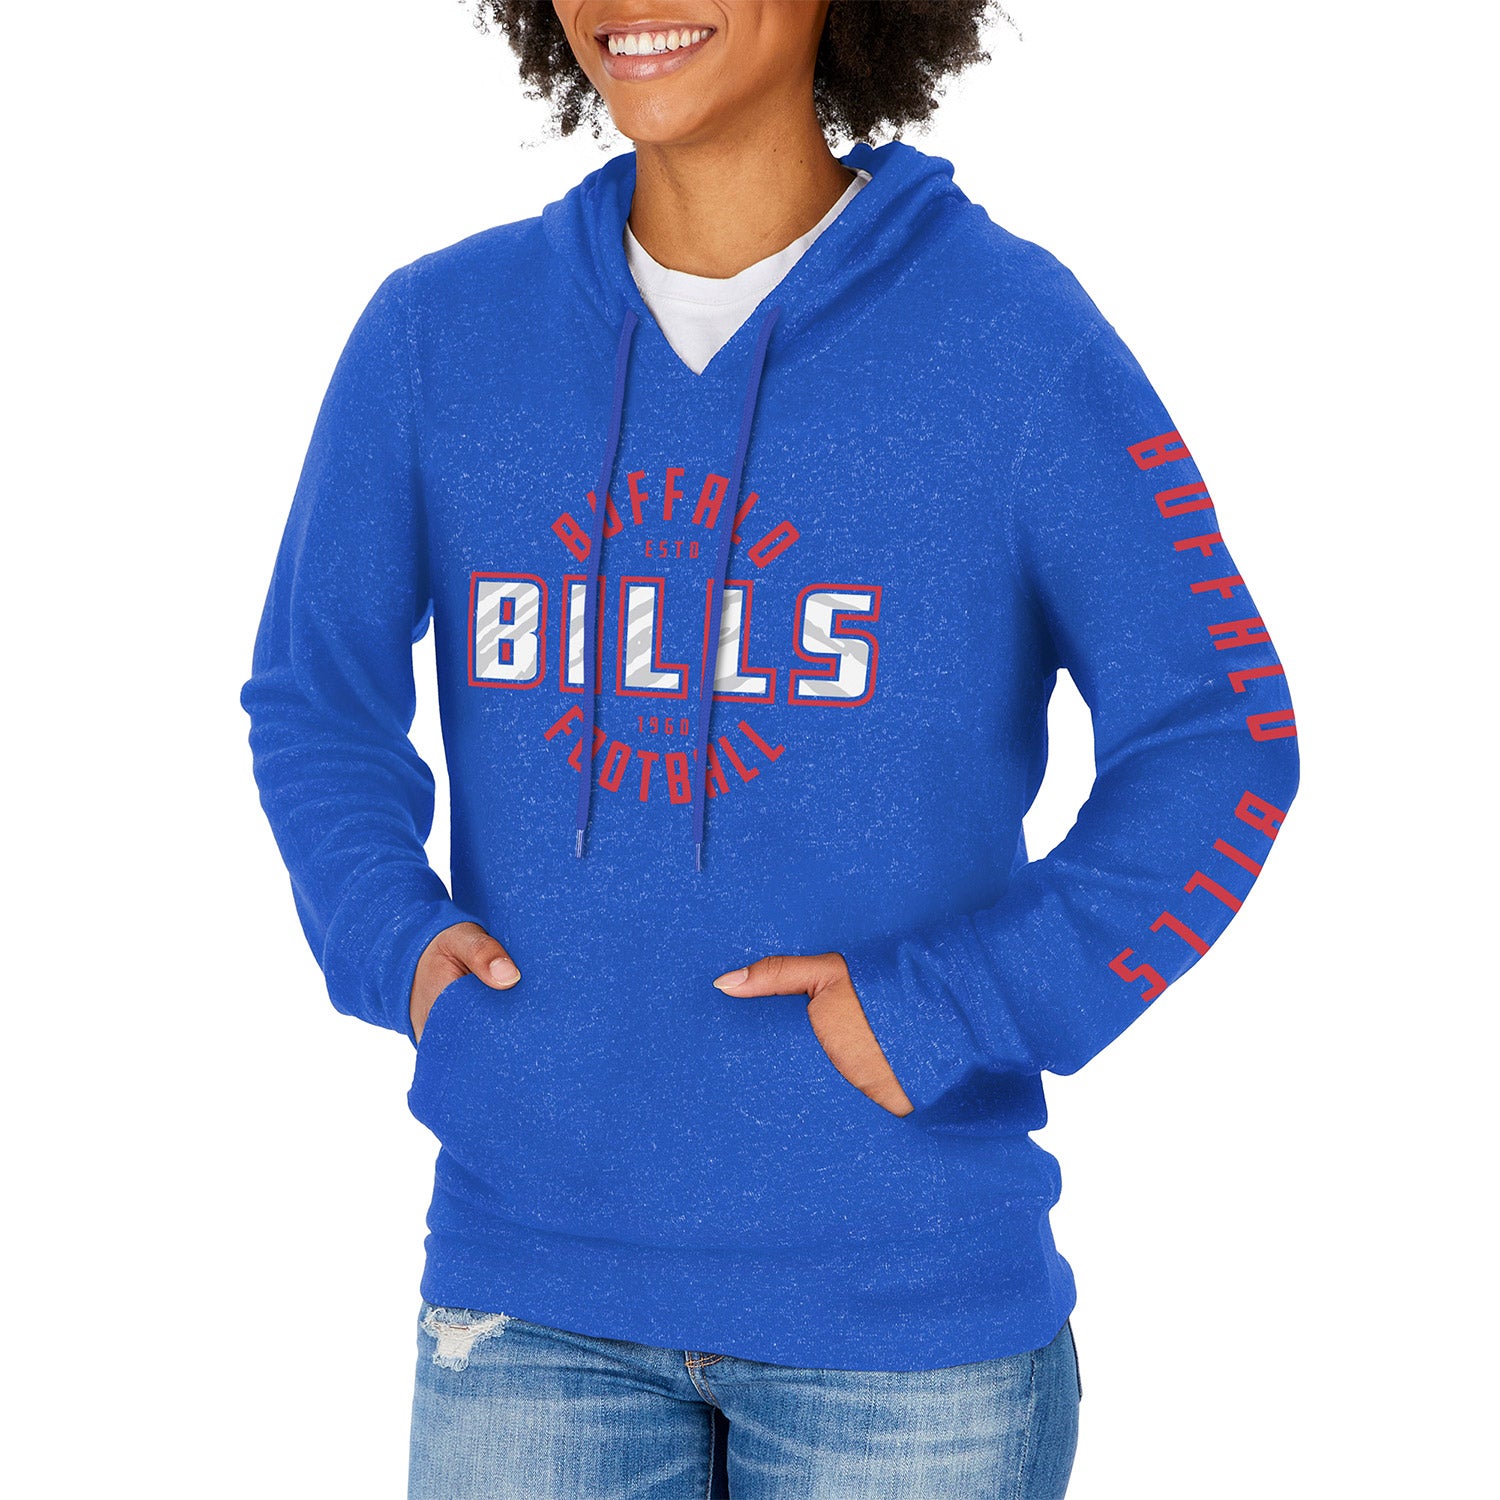 ladies buffalo bills sweatshirt